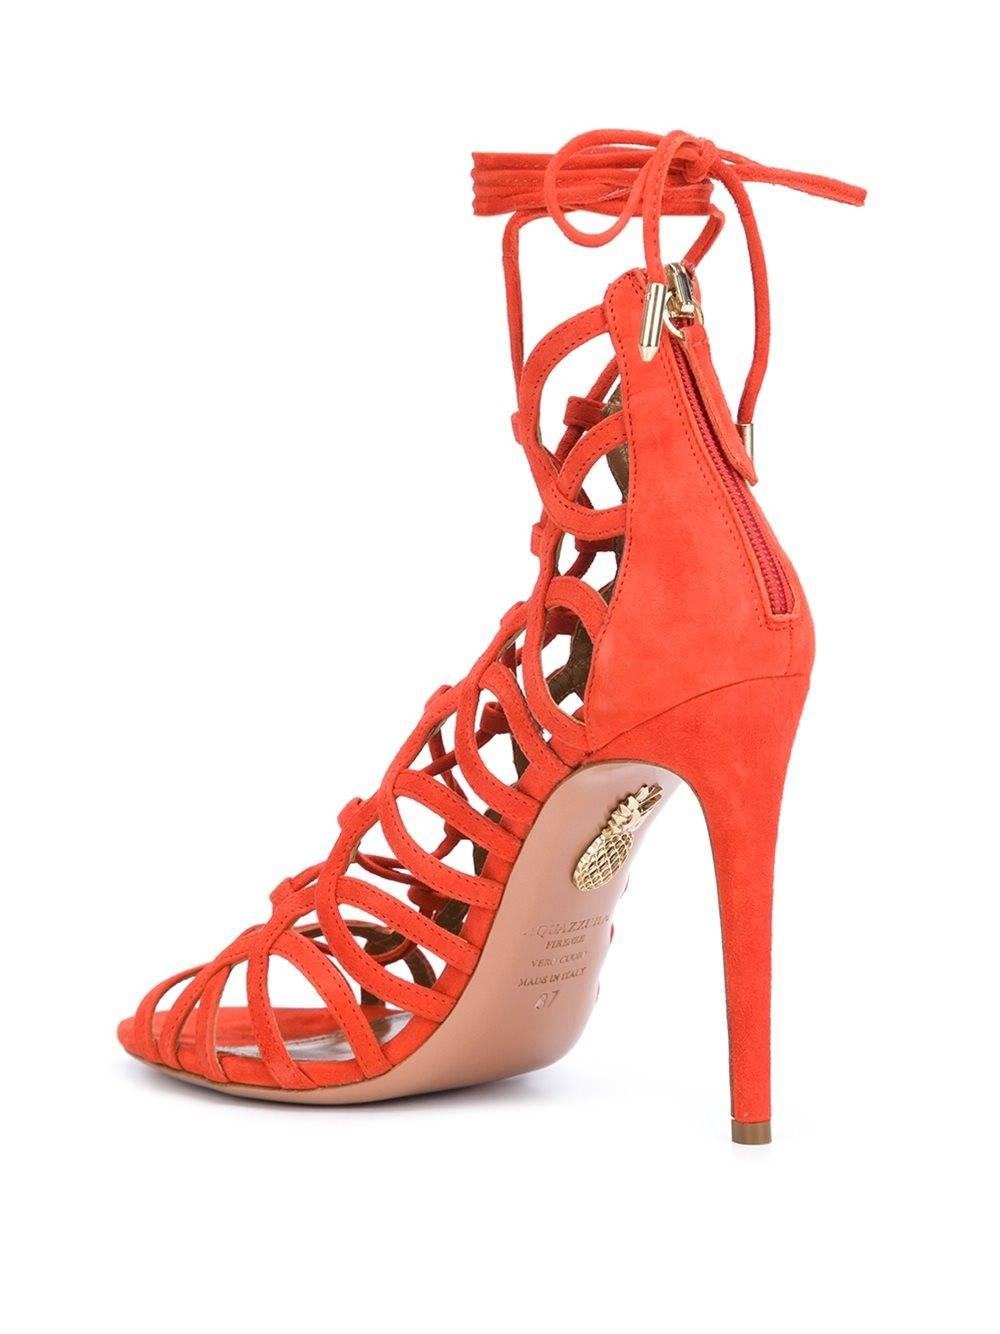 aquazzura orange heels